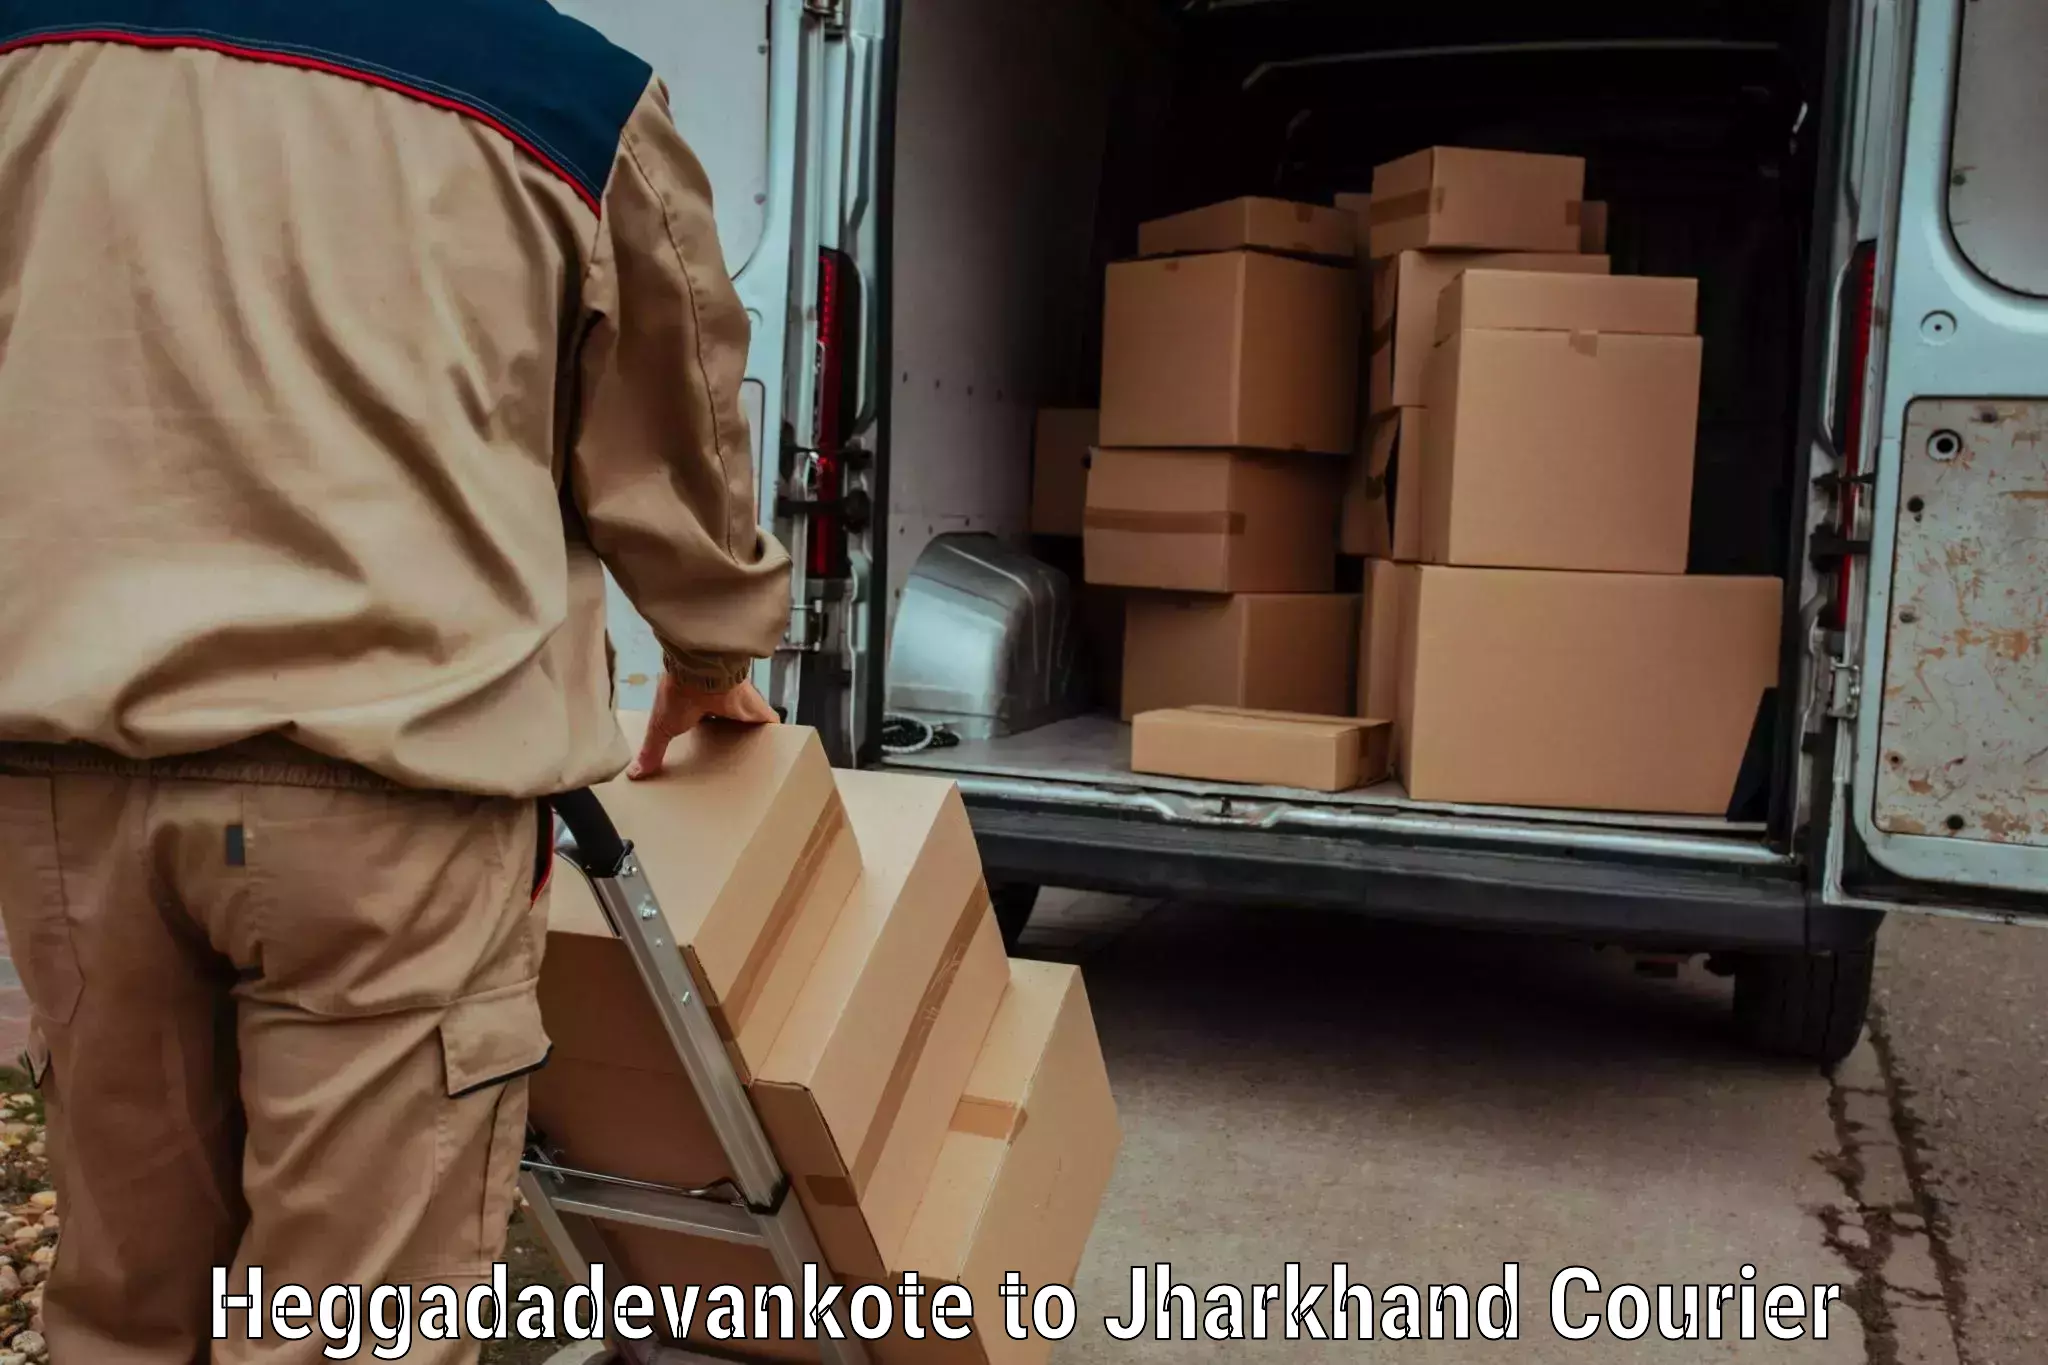 Efficient freight service Heggadadevankote to Hazaribagh